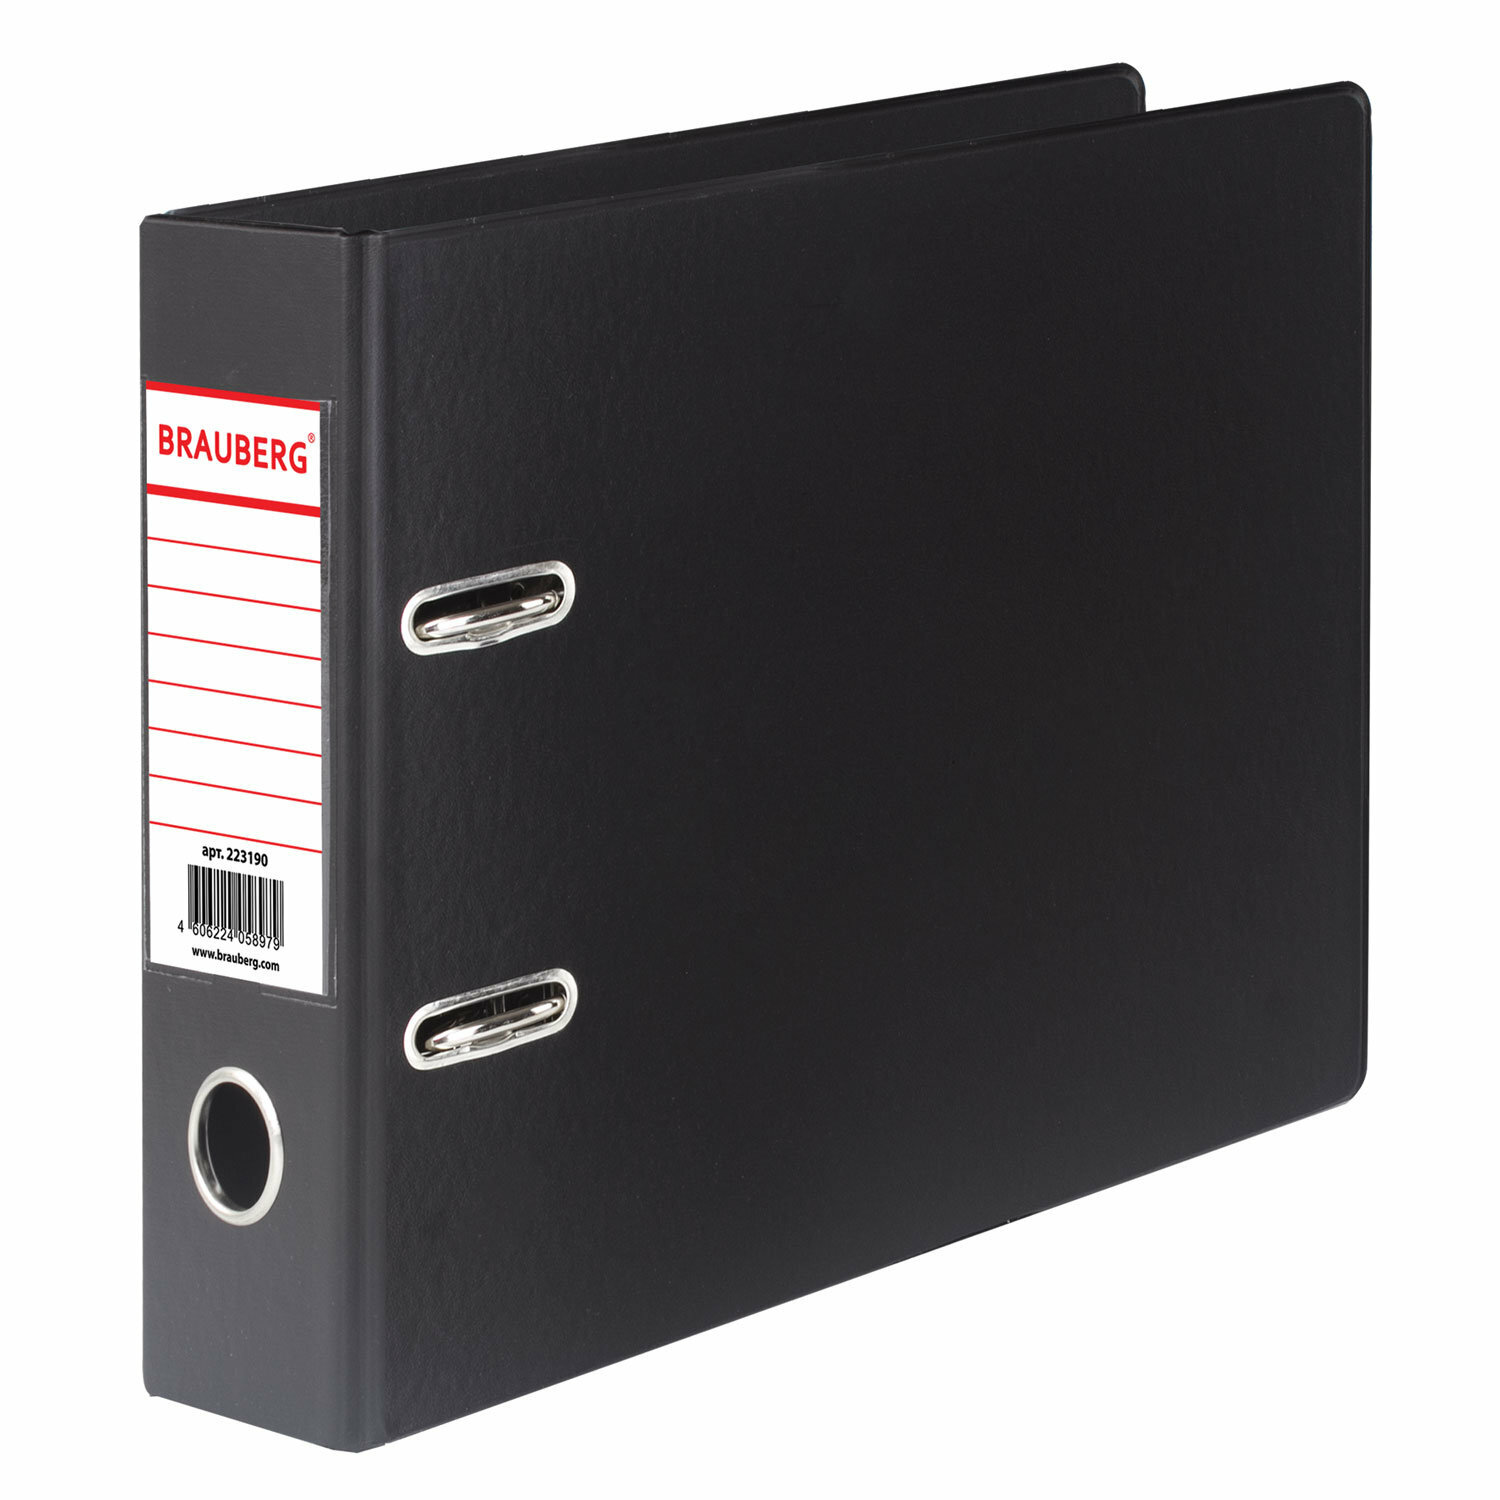 Папка-регистратор малый формат (148х210 мм), А5, 70 мм, горизонтальная, двухстороннее покрытие, ПВХ, черная, BRAUBERG, 223190